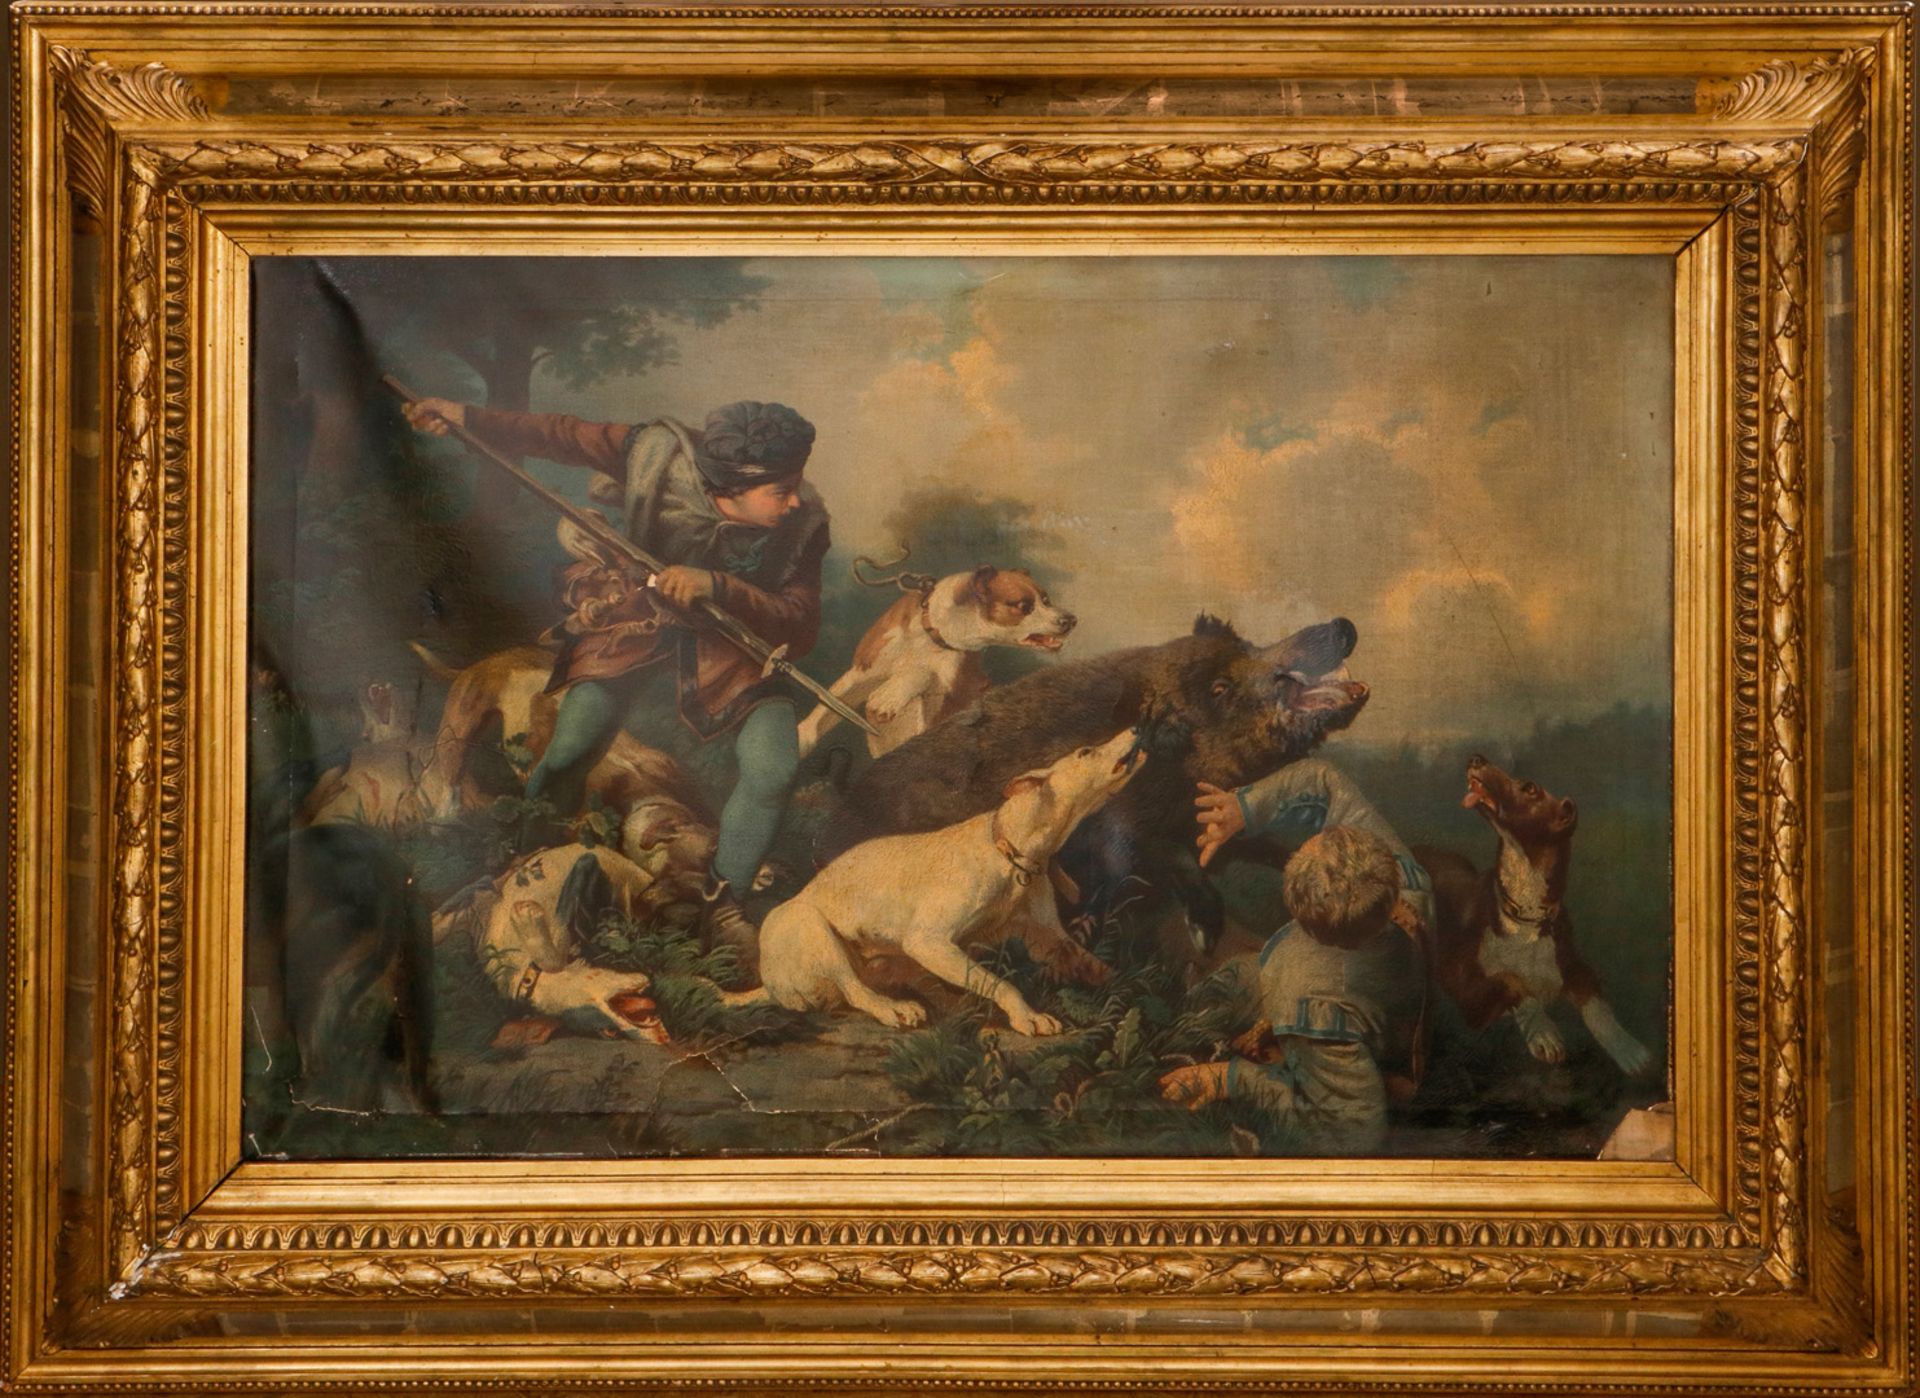 Öldruck von altem Gemälde Wildschweinjagd, in schwerem, vergoldetem Rahmen, um 1900, Bild tw besch.,